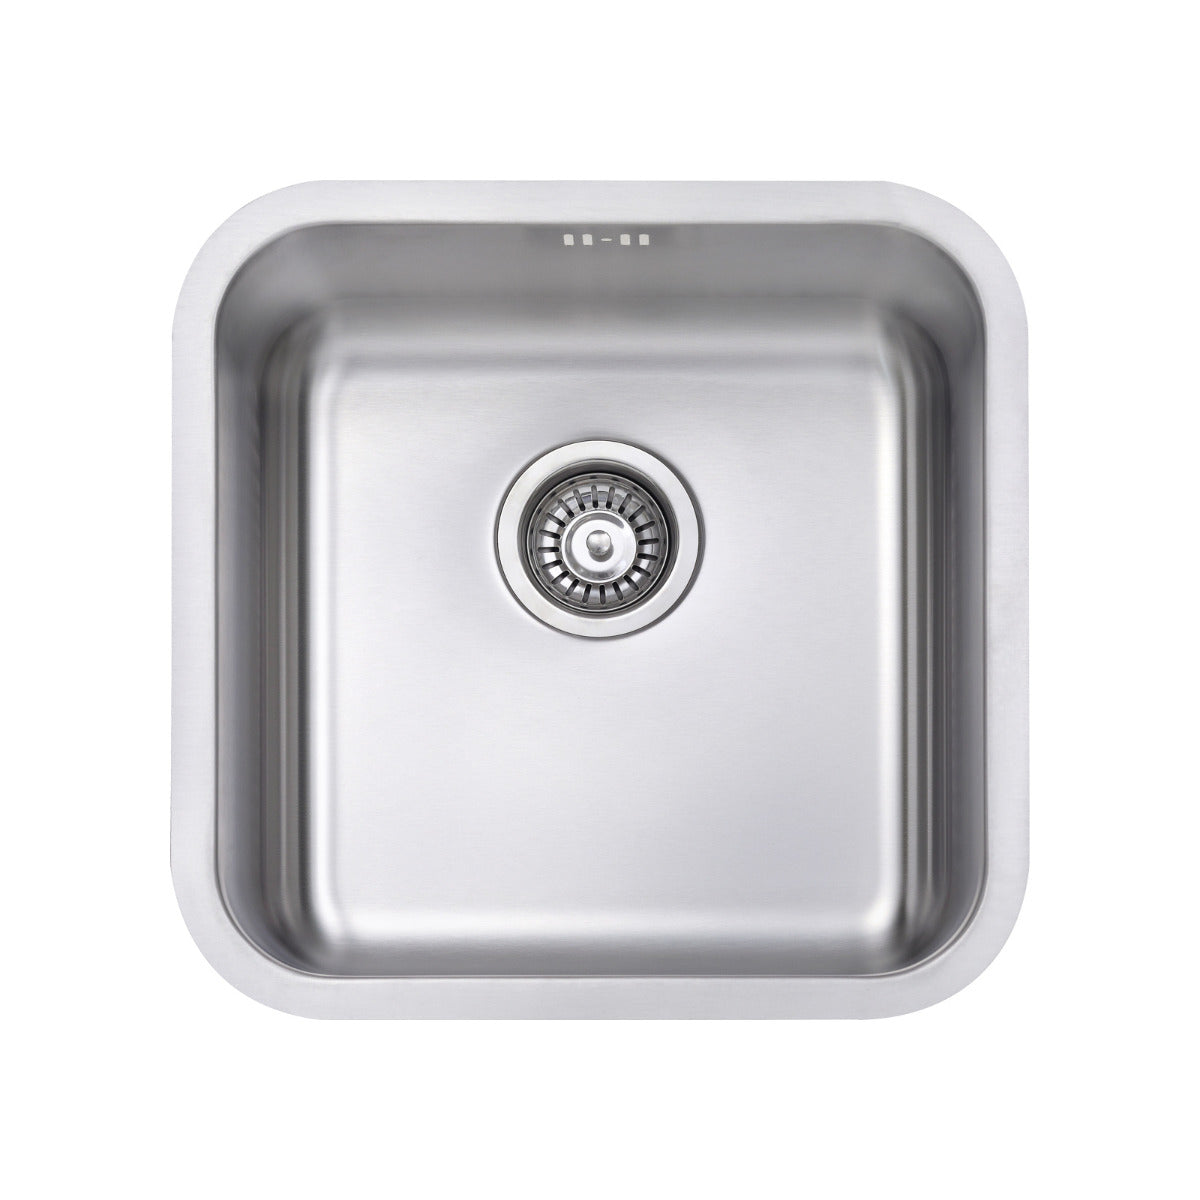 JassferryJASSFERRY 450 x 450 mm Undermount Stainless Steel Kitchen Sink 1 Bowl - 885Kitchen Sinks